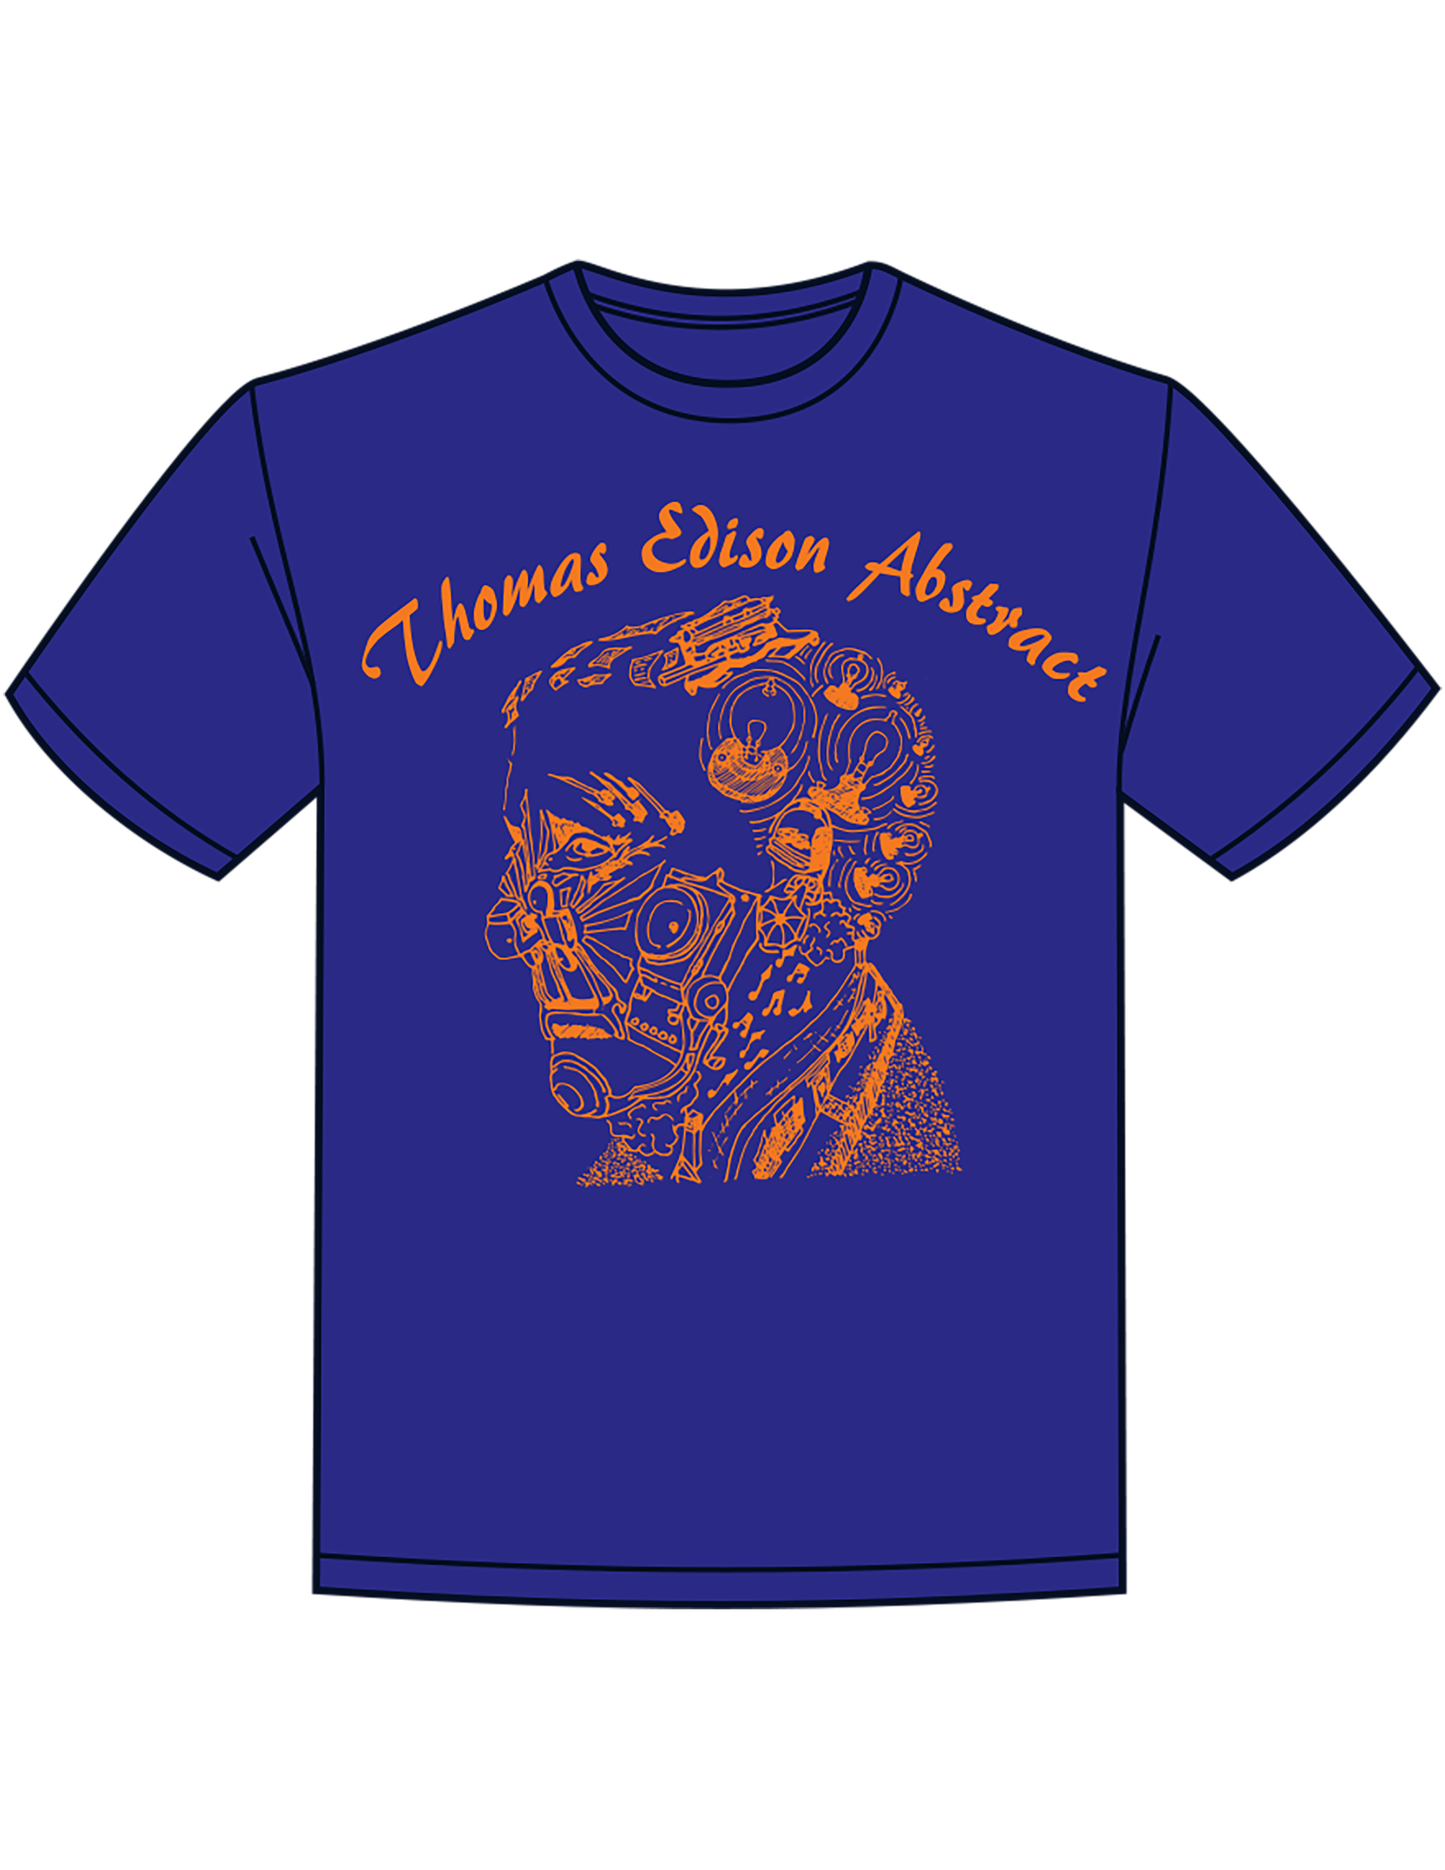 Thomas Edison Abstract T-Shirts